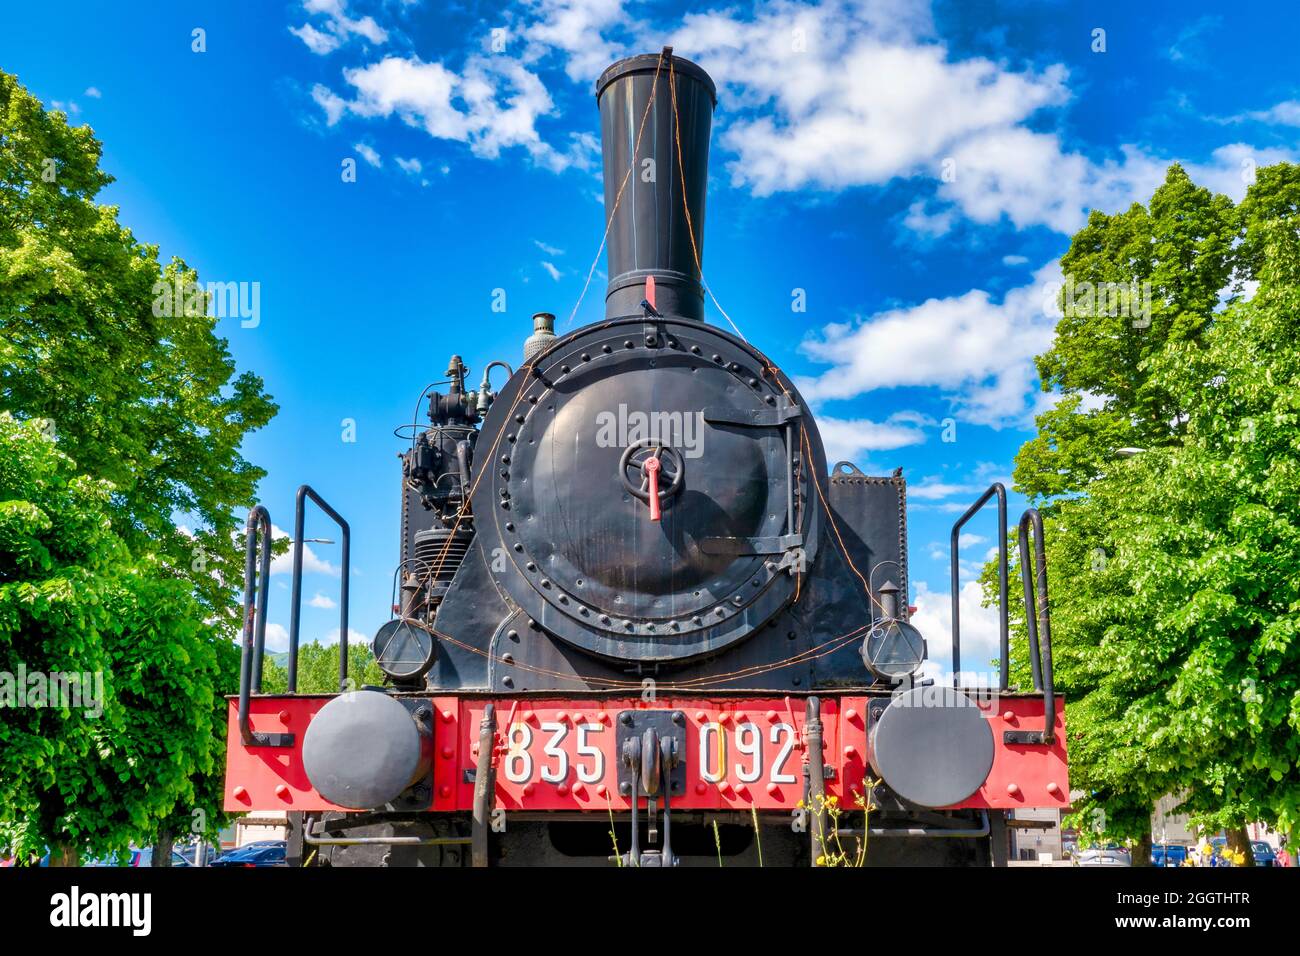 Locomotive à vapeur 835.092 du 'Ferrovie dello Stato' conservée comme monument à la gare de Sulmona, Italie Banque D'Images